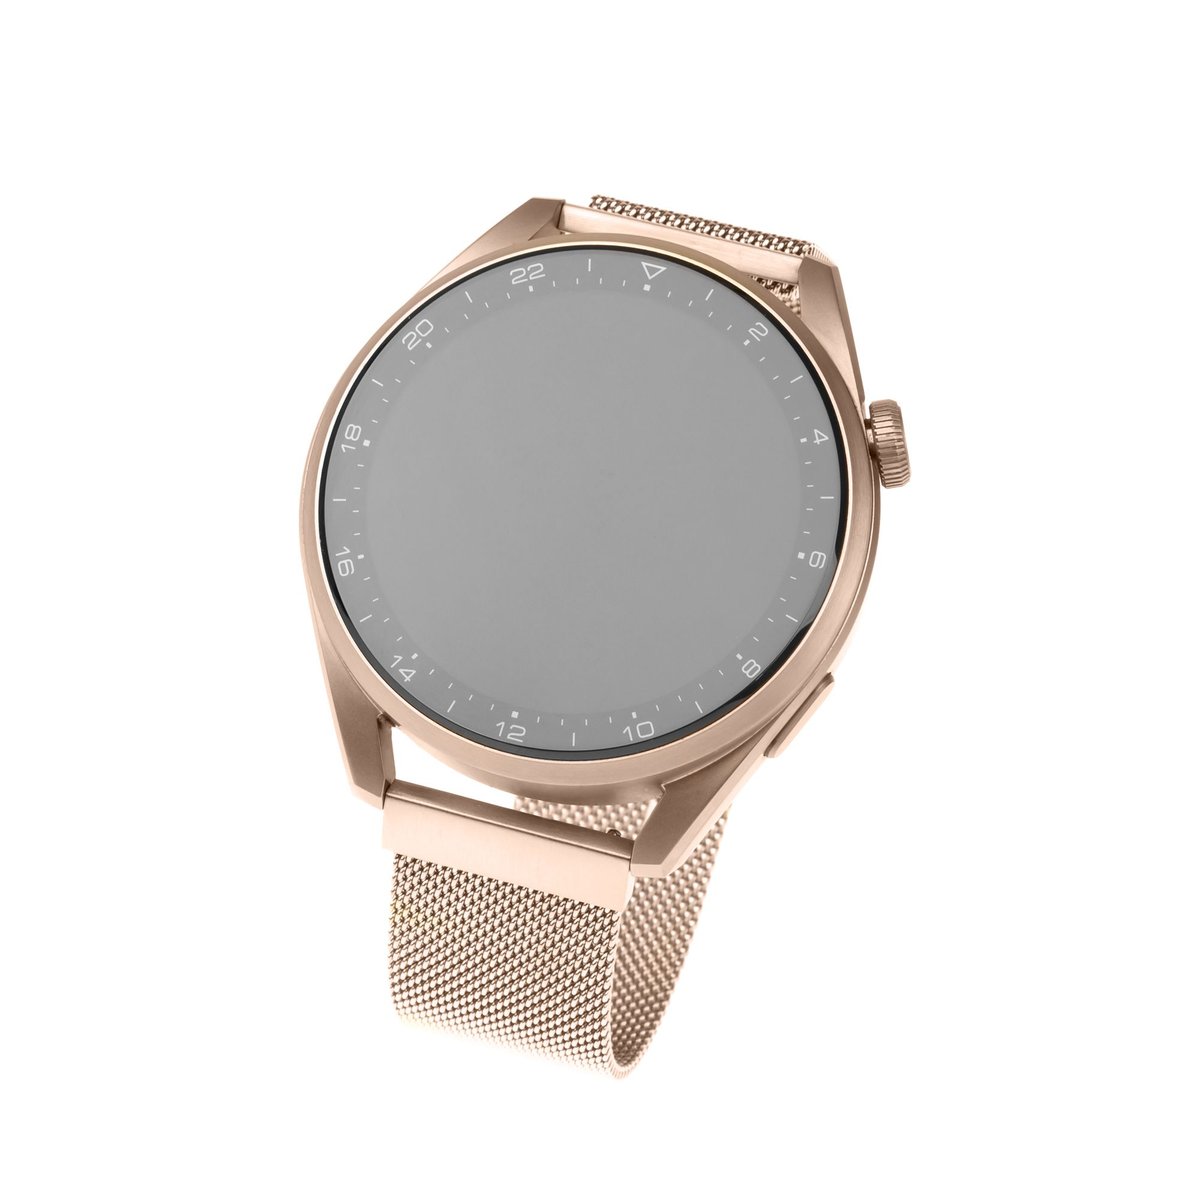 Fixed Pasek wymienny Mesh Strap s šířkou 22mm na smartwatch FIXMEST-22MM-RG) Różowy Złoty